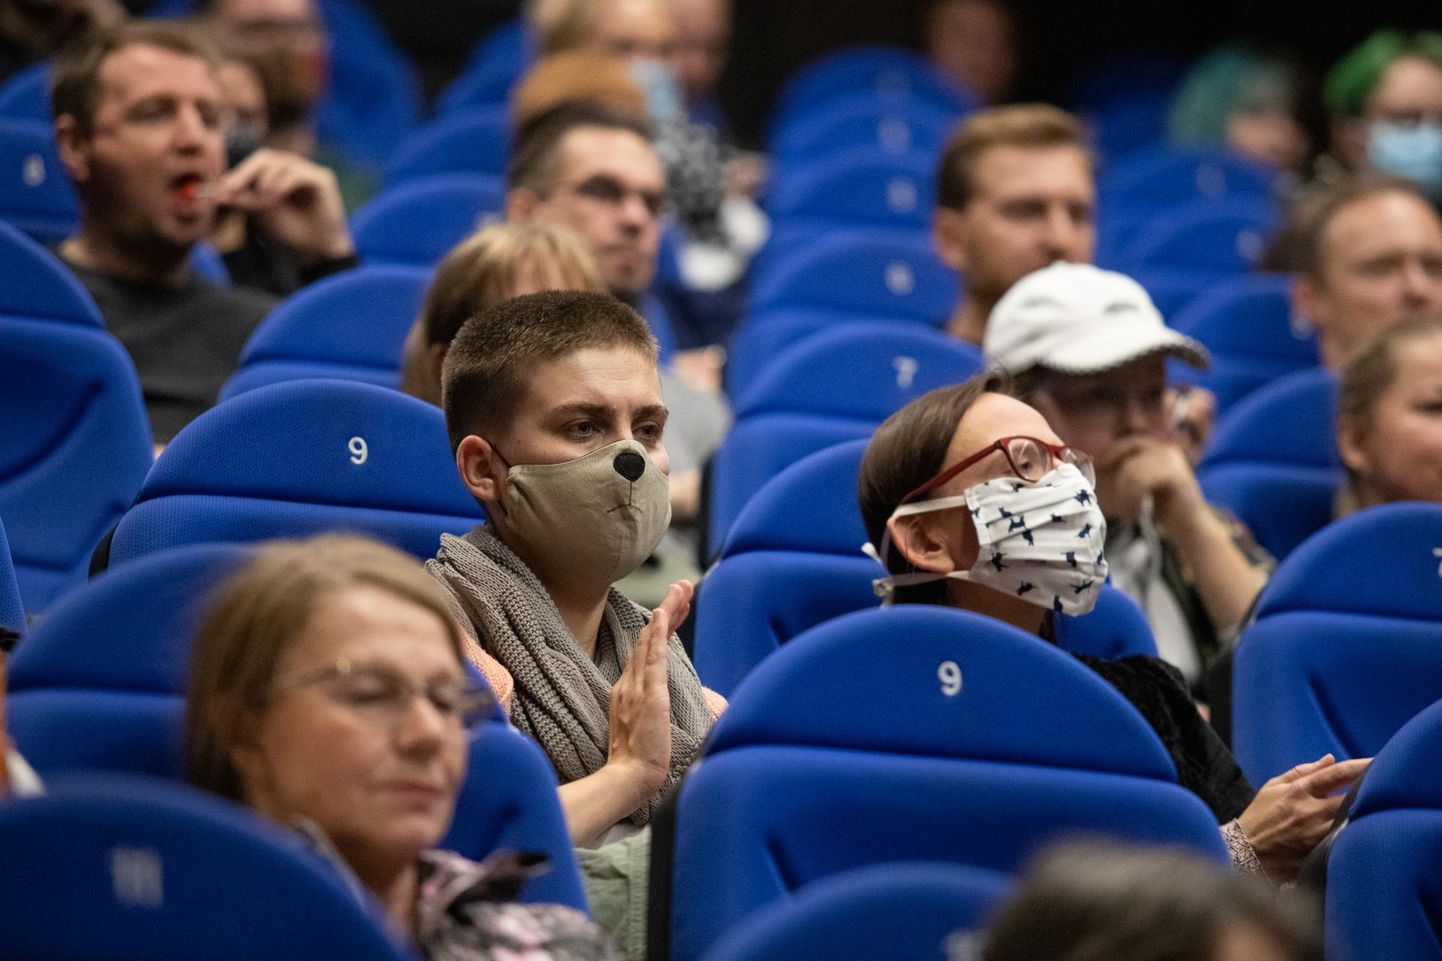 Kino külastamisel tuleb kindlasti arvestada sellega, et mask peab ees olema. 